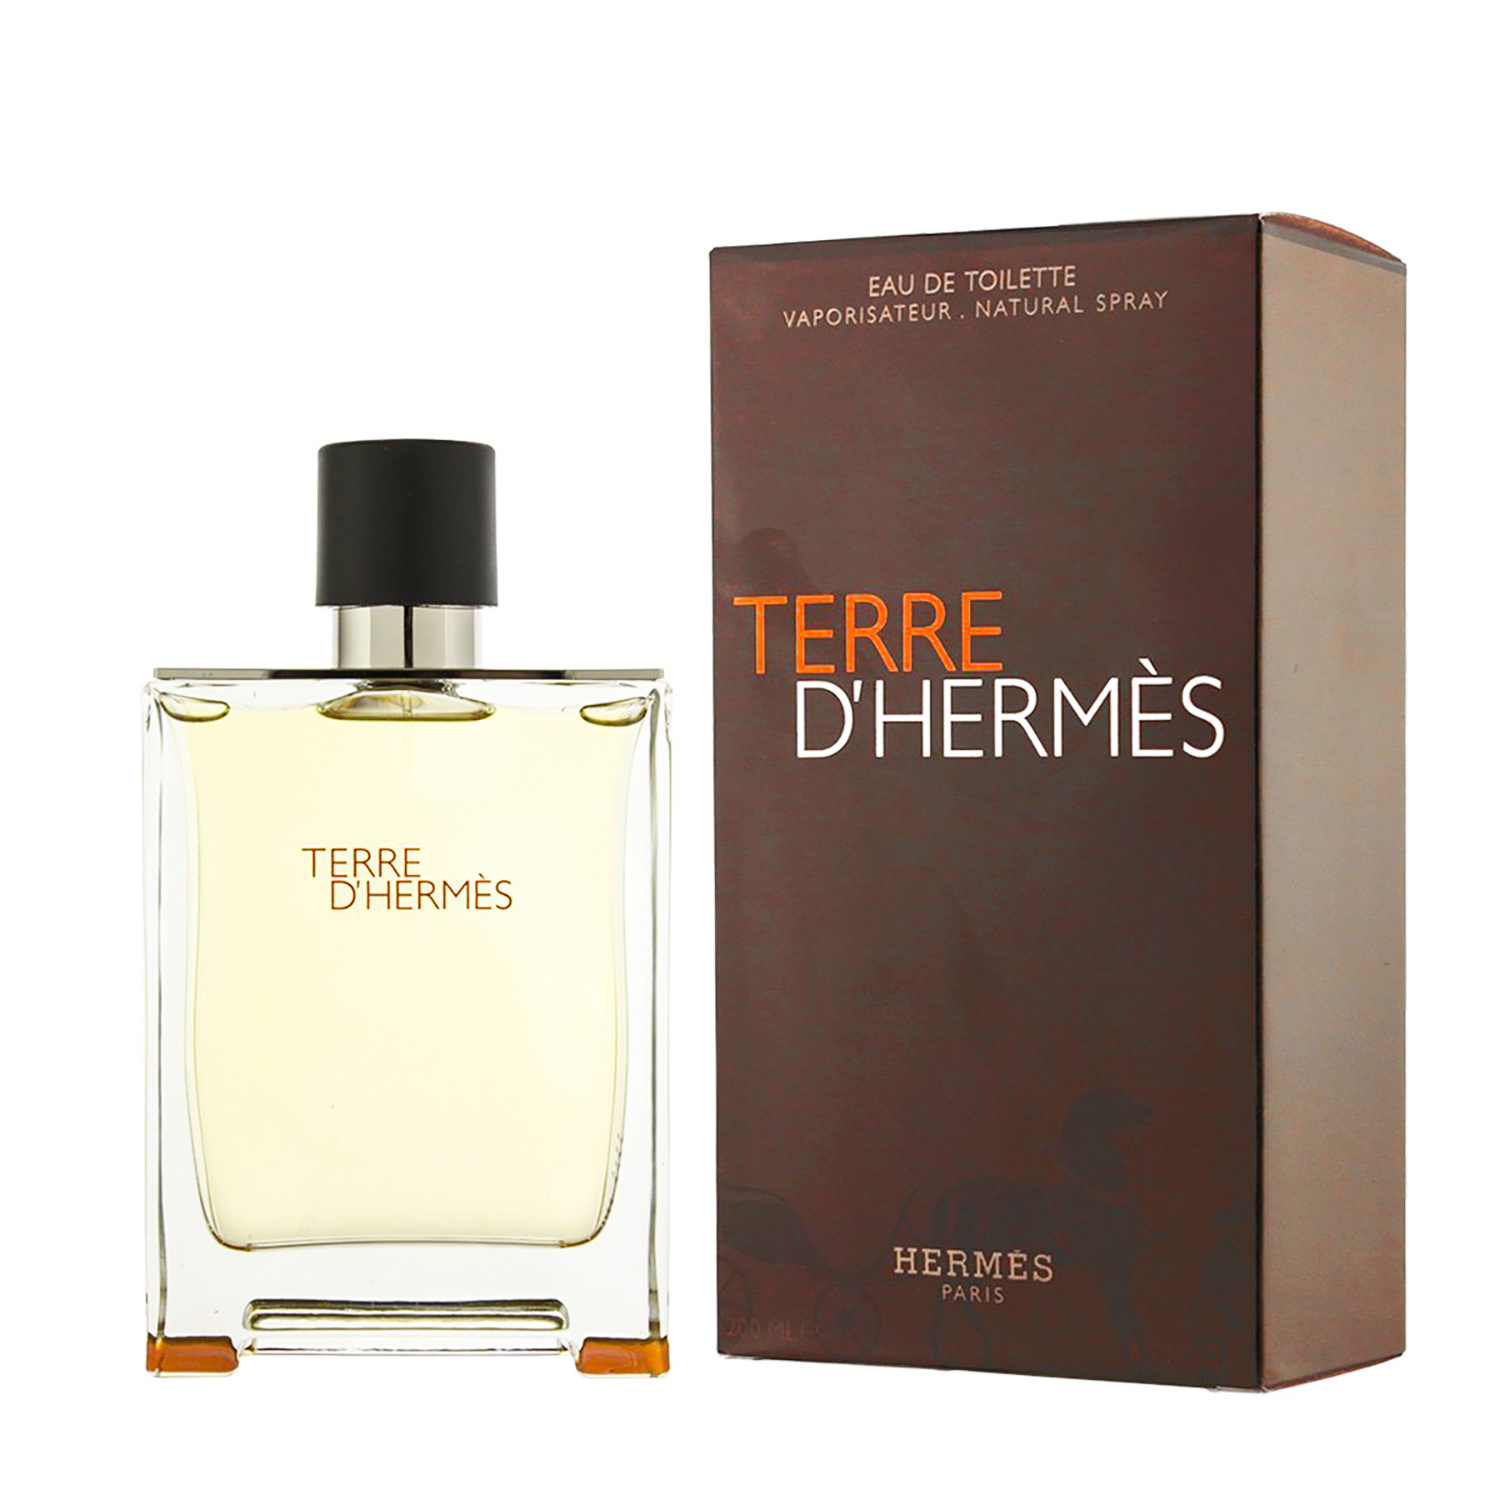 Купить Туалетная вода Hermes, Hermes Terre D'hermes Eau De Toilette 100ml тестер, Франция